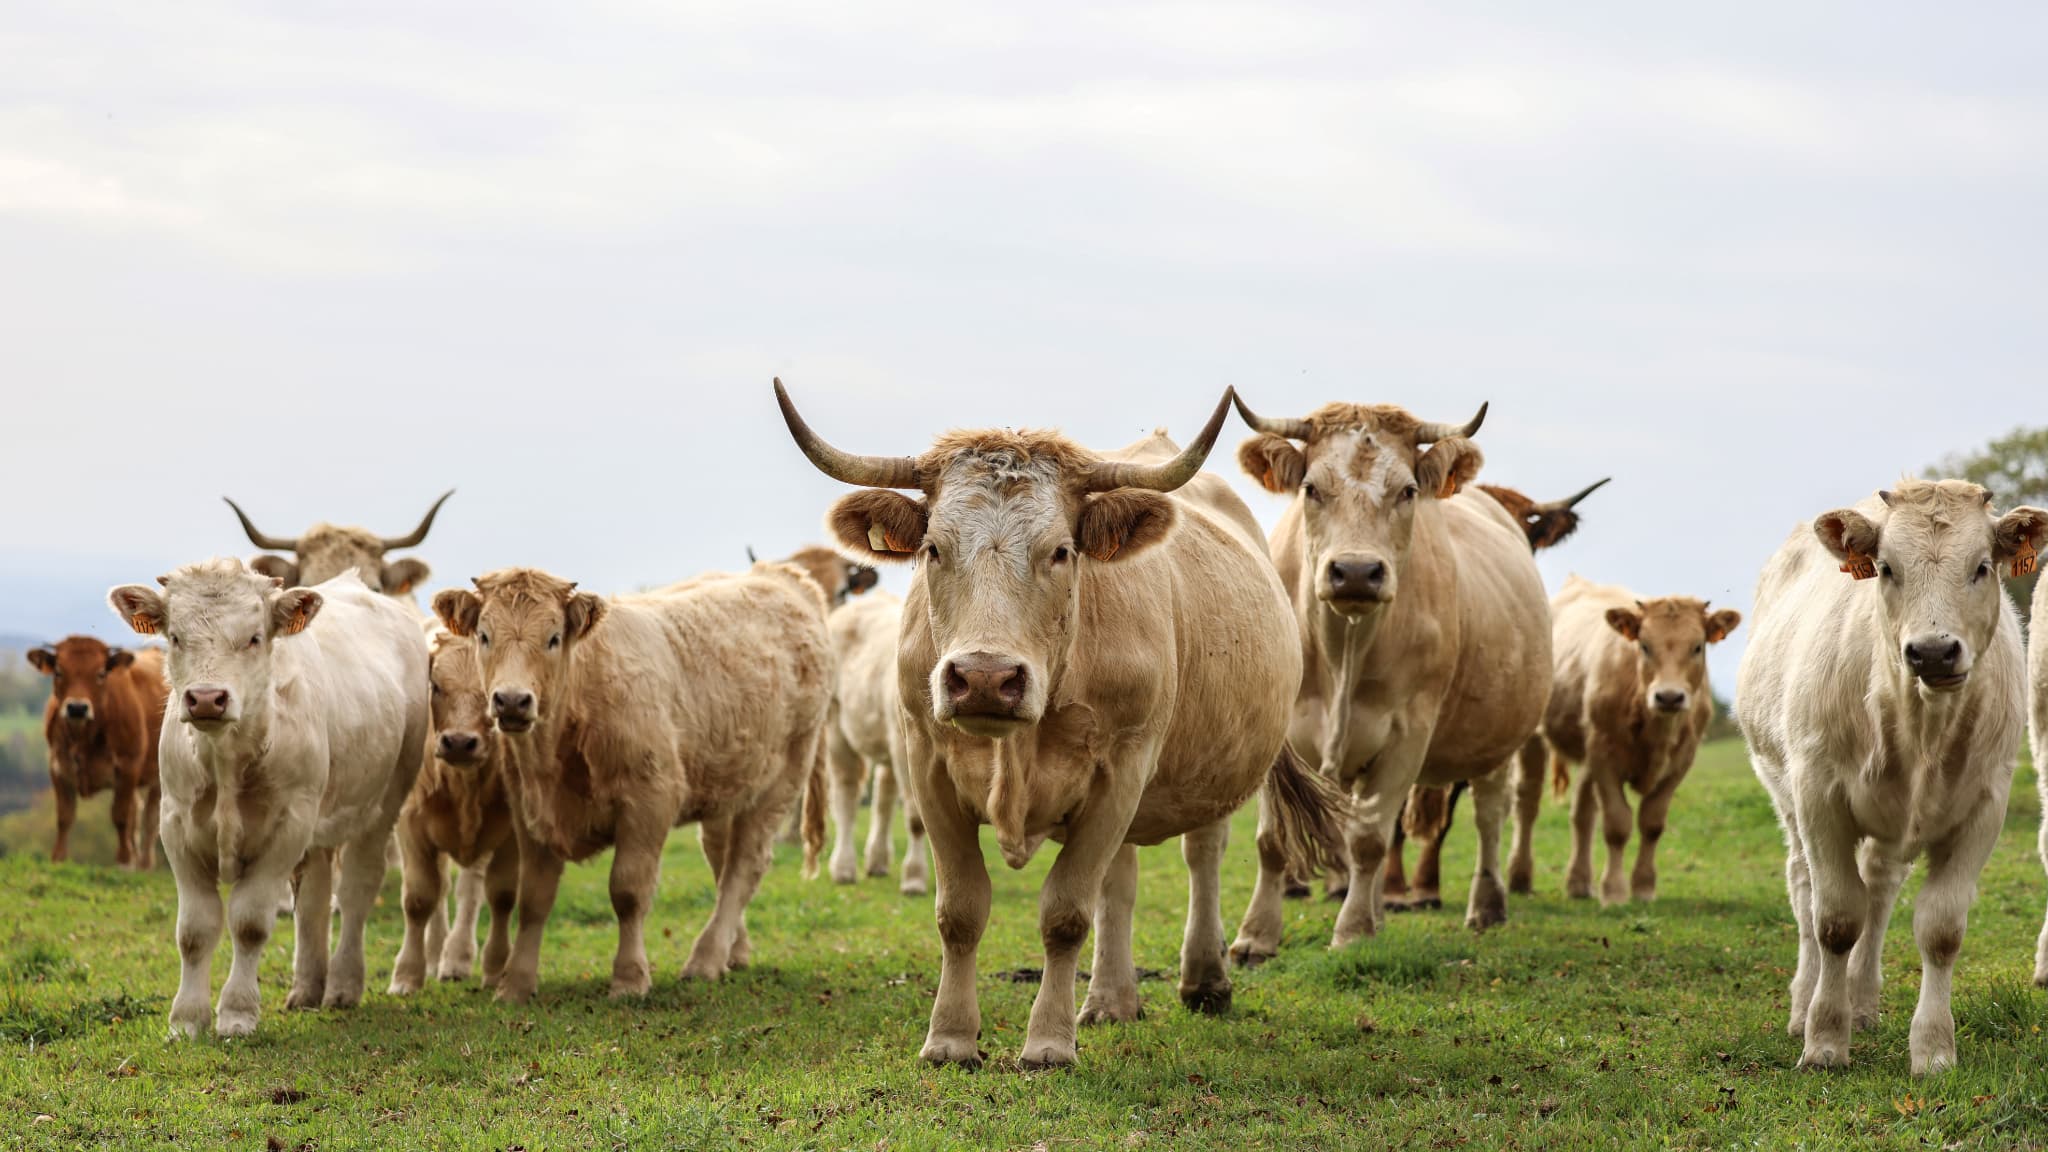 Les additifs alimentaires ne réduisent pas fortement les émissions de méthane des vaches